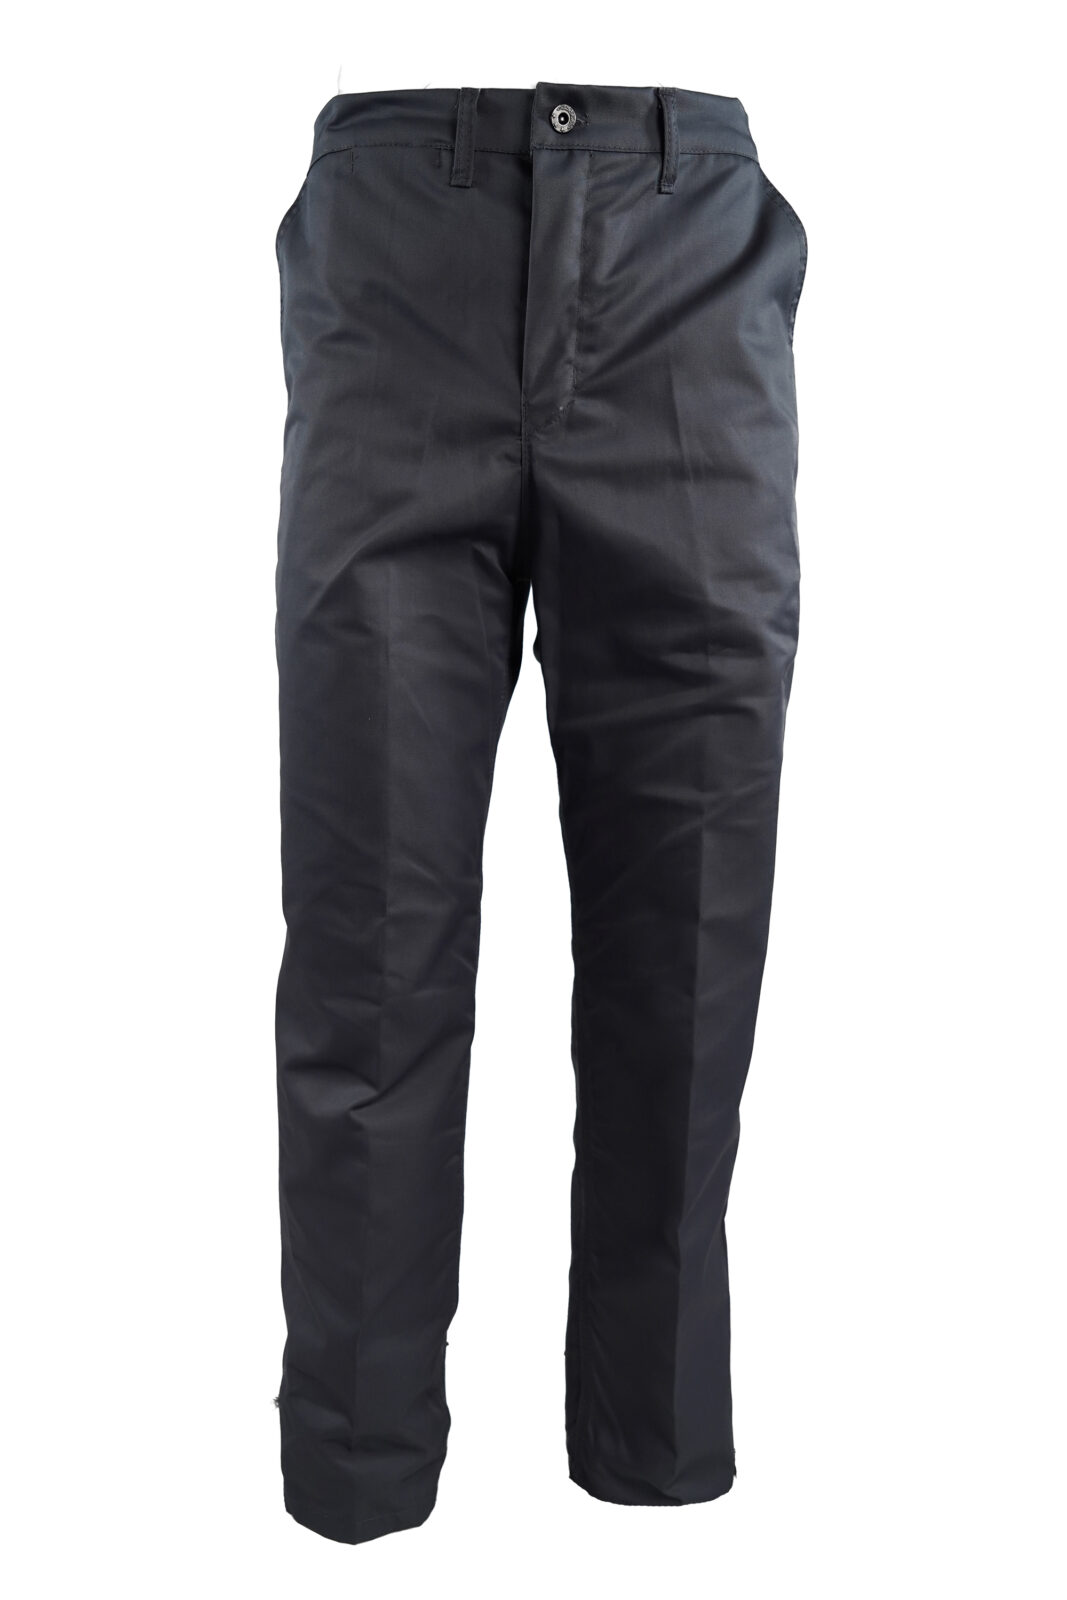 Titan Workwear Grey Conti Trouser - Santon Workwear